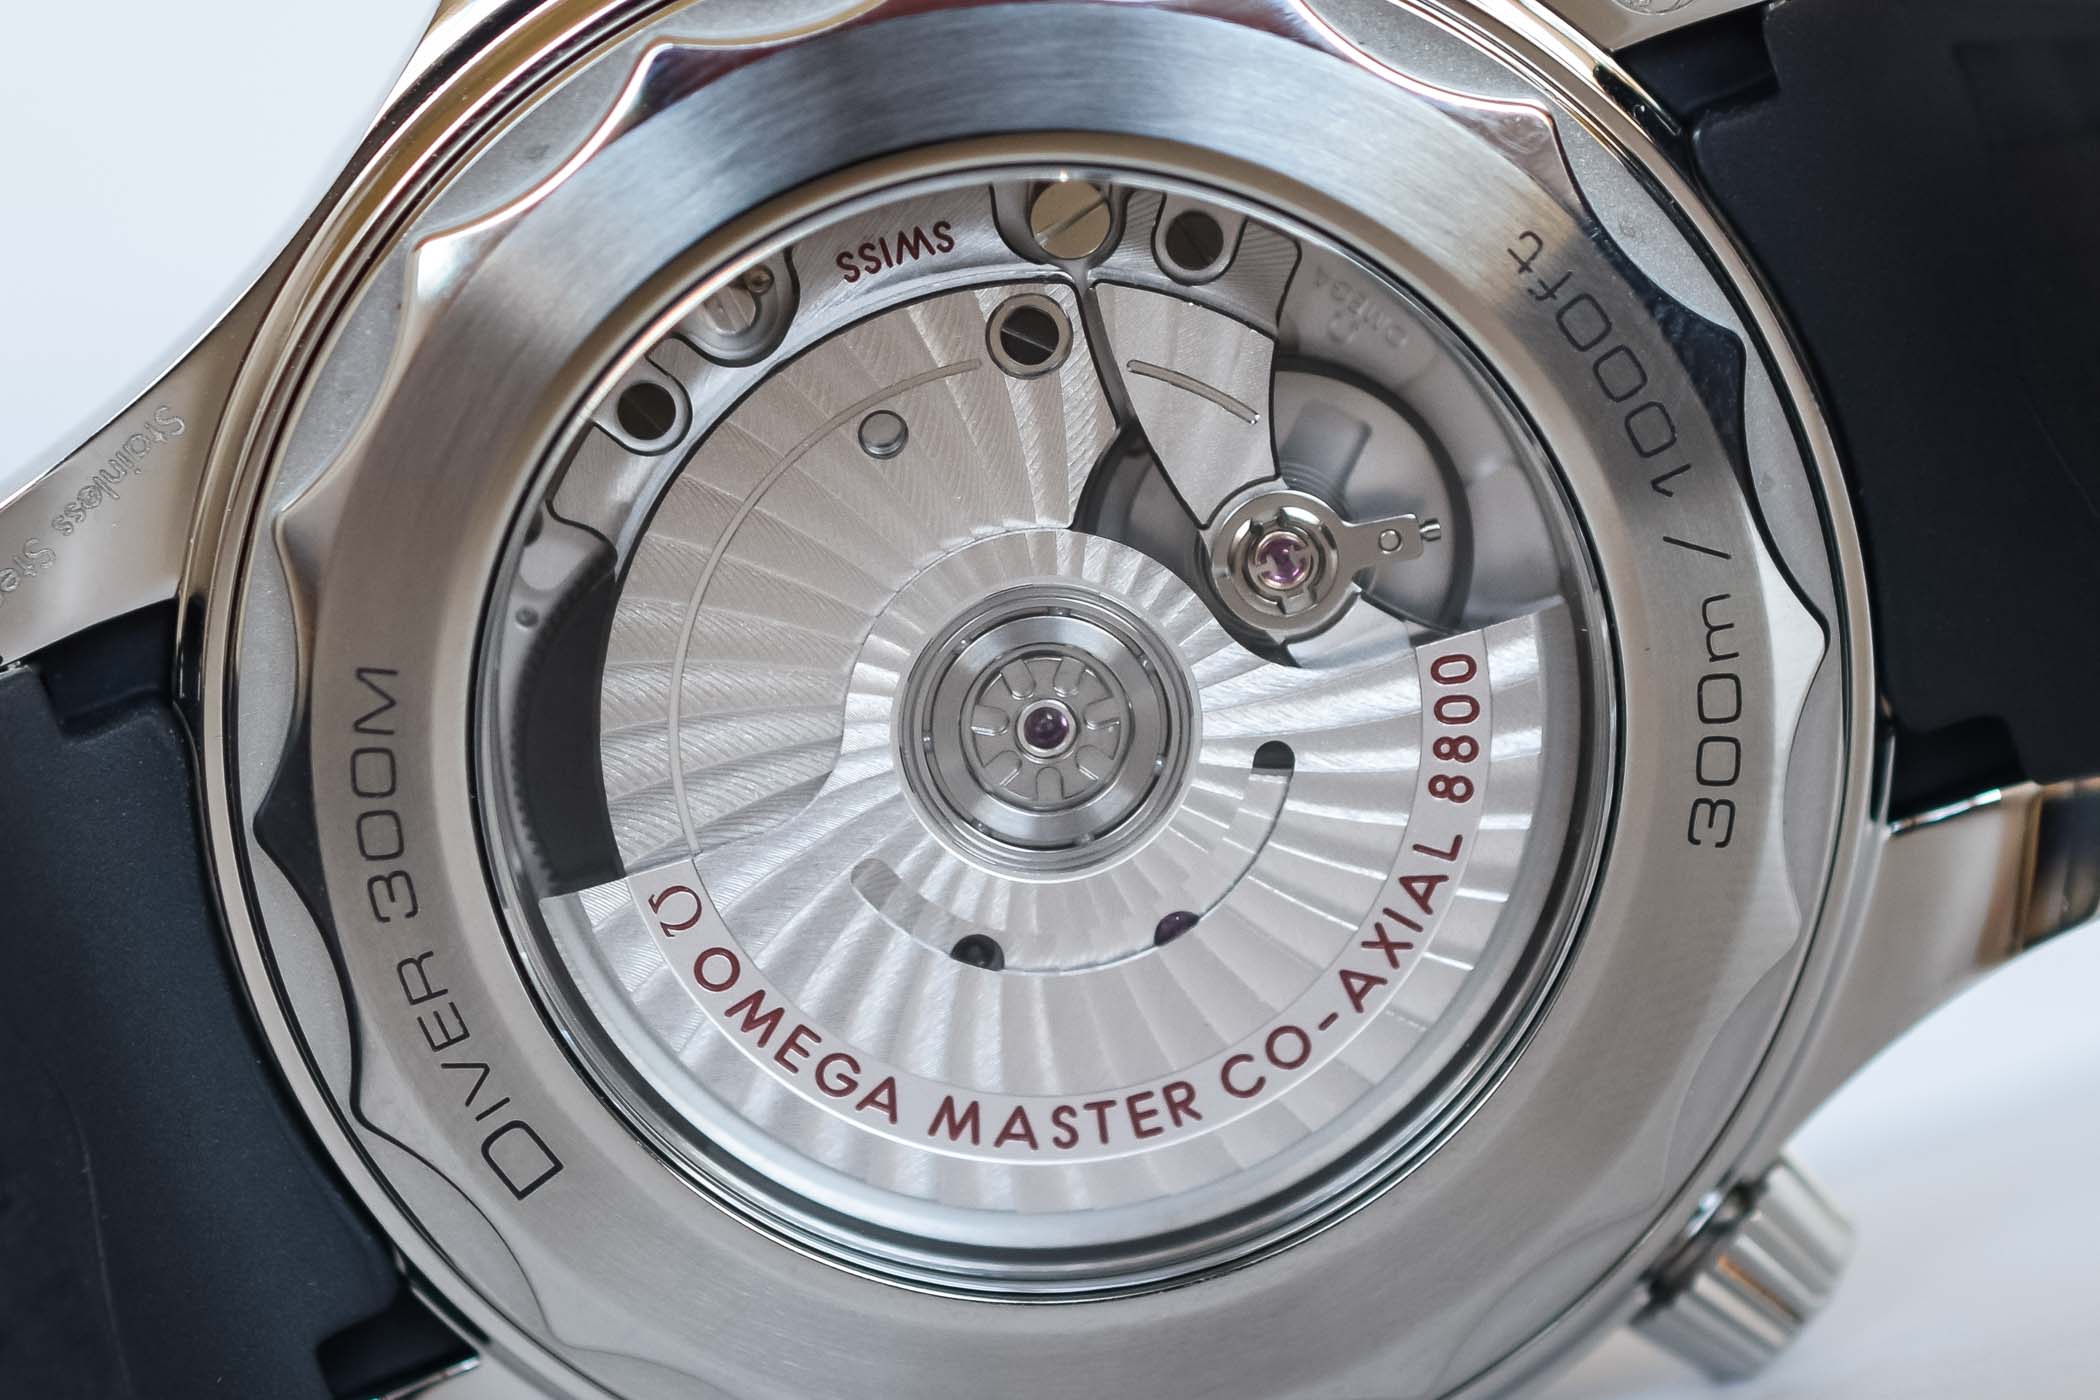 Omega Seamaster Diver 300M Master Chronometer White Dial - 210.32.42.20.04.001